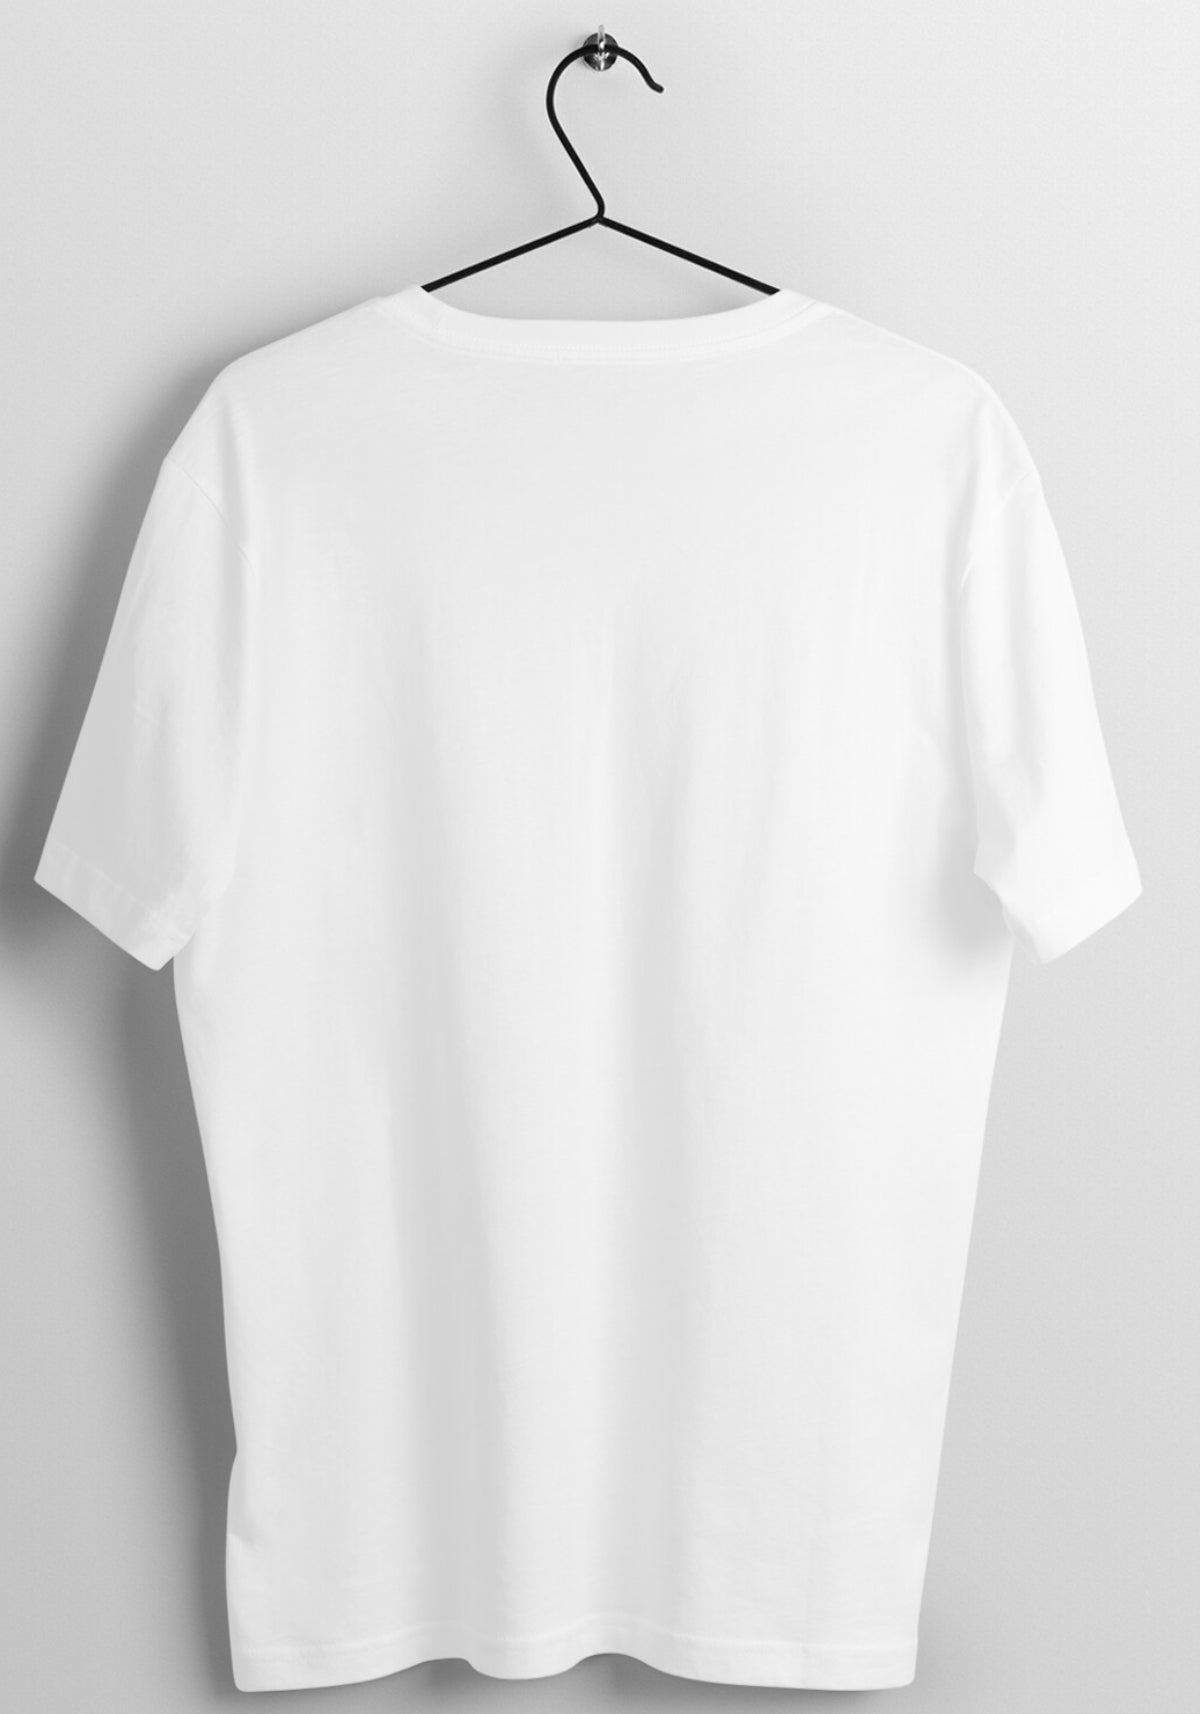 Mo Salah Liverpool T-shirt